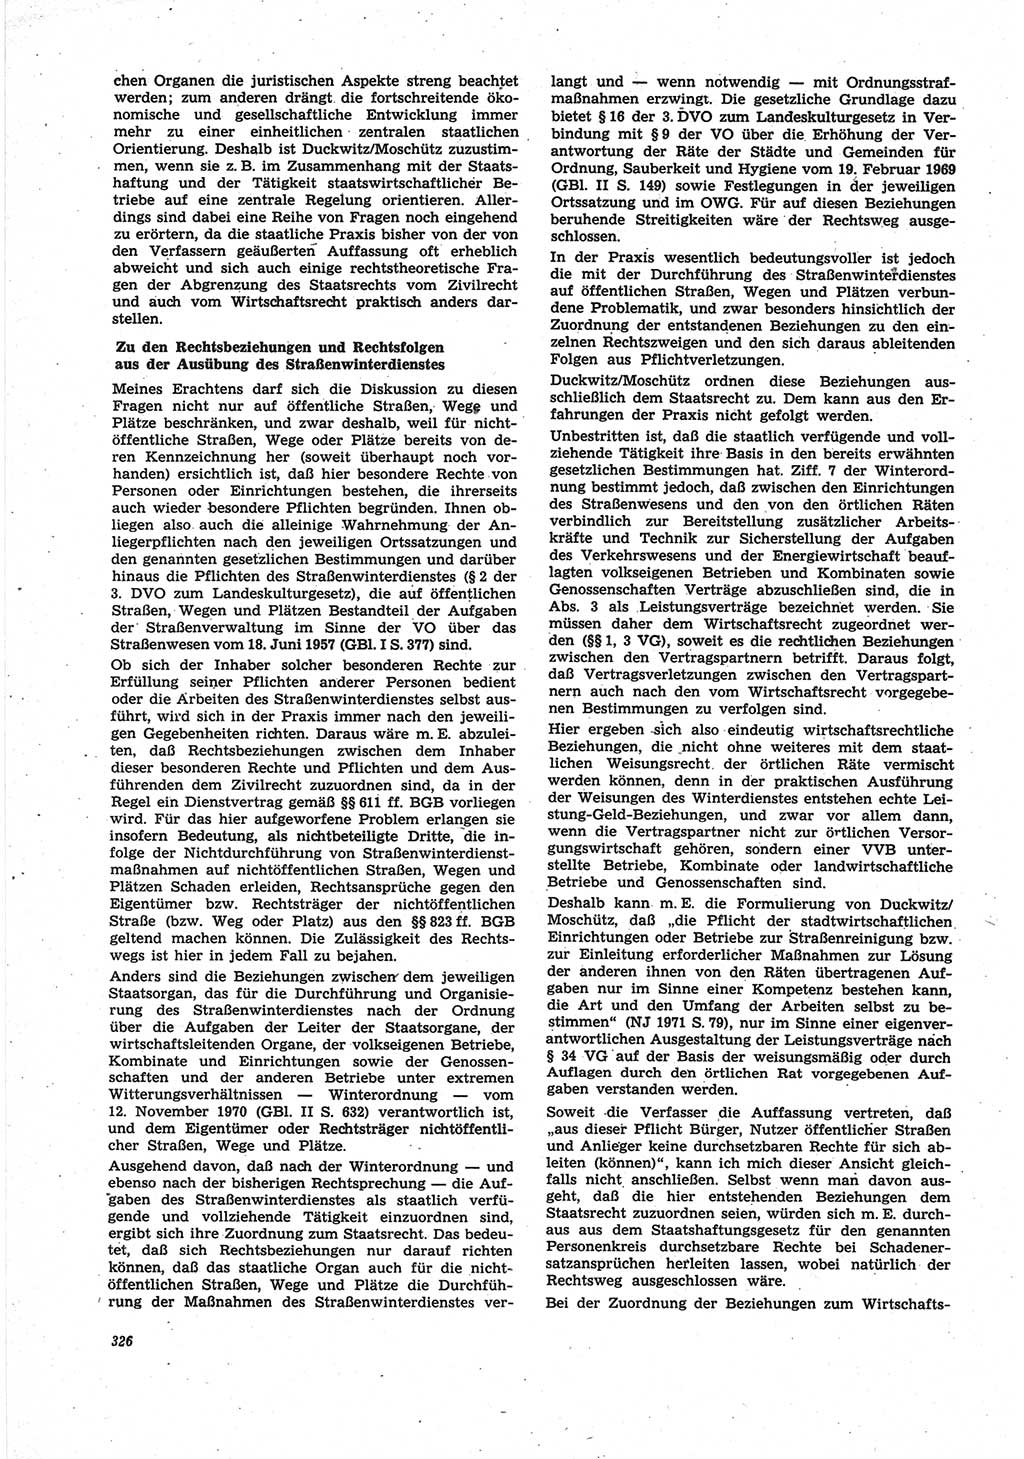 Neue Justiz (NJ), Zeitschrift für Recht und Rechtswissenschaft [Deutsche Demokratische Republik (DDR)], 25. Jahrgang 1971, Seite 326 (NJ DDR 1971, S. 326)